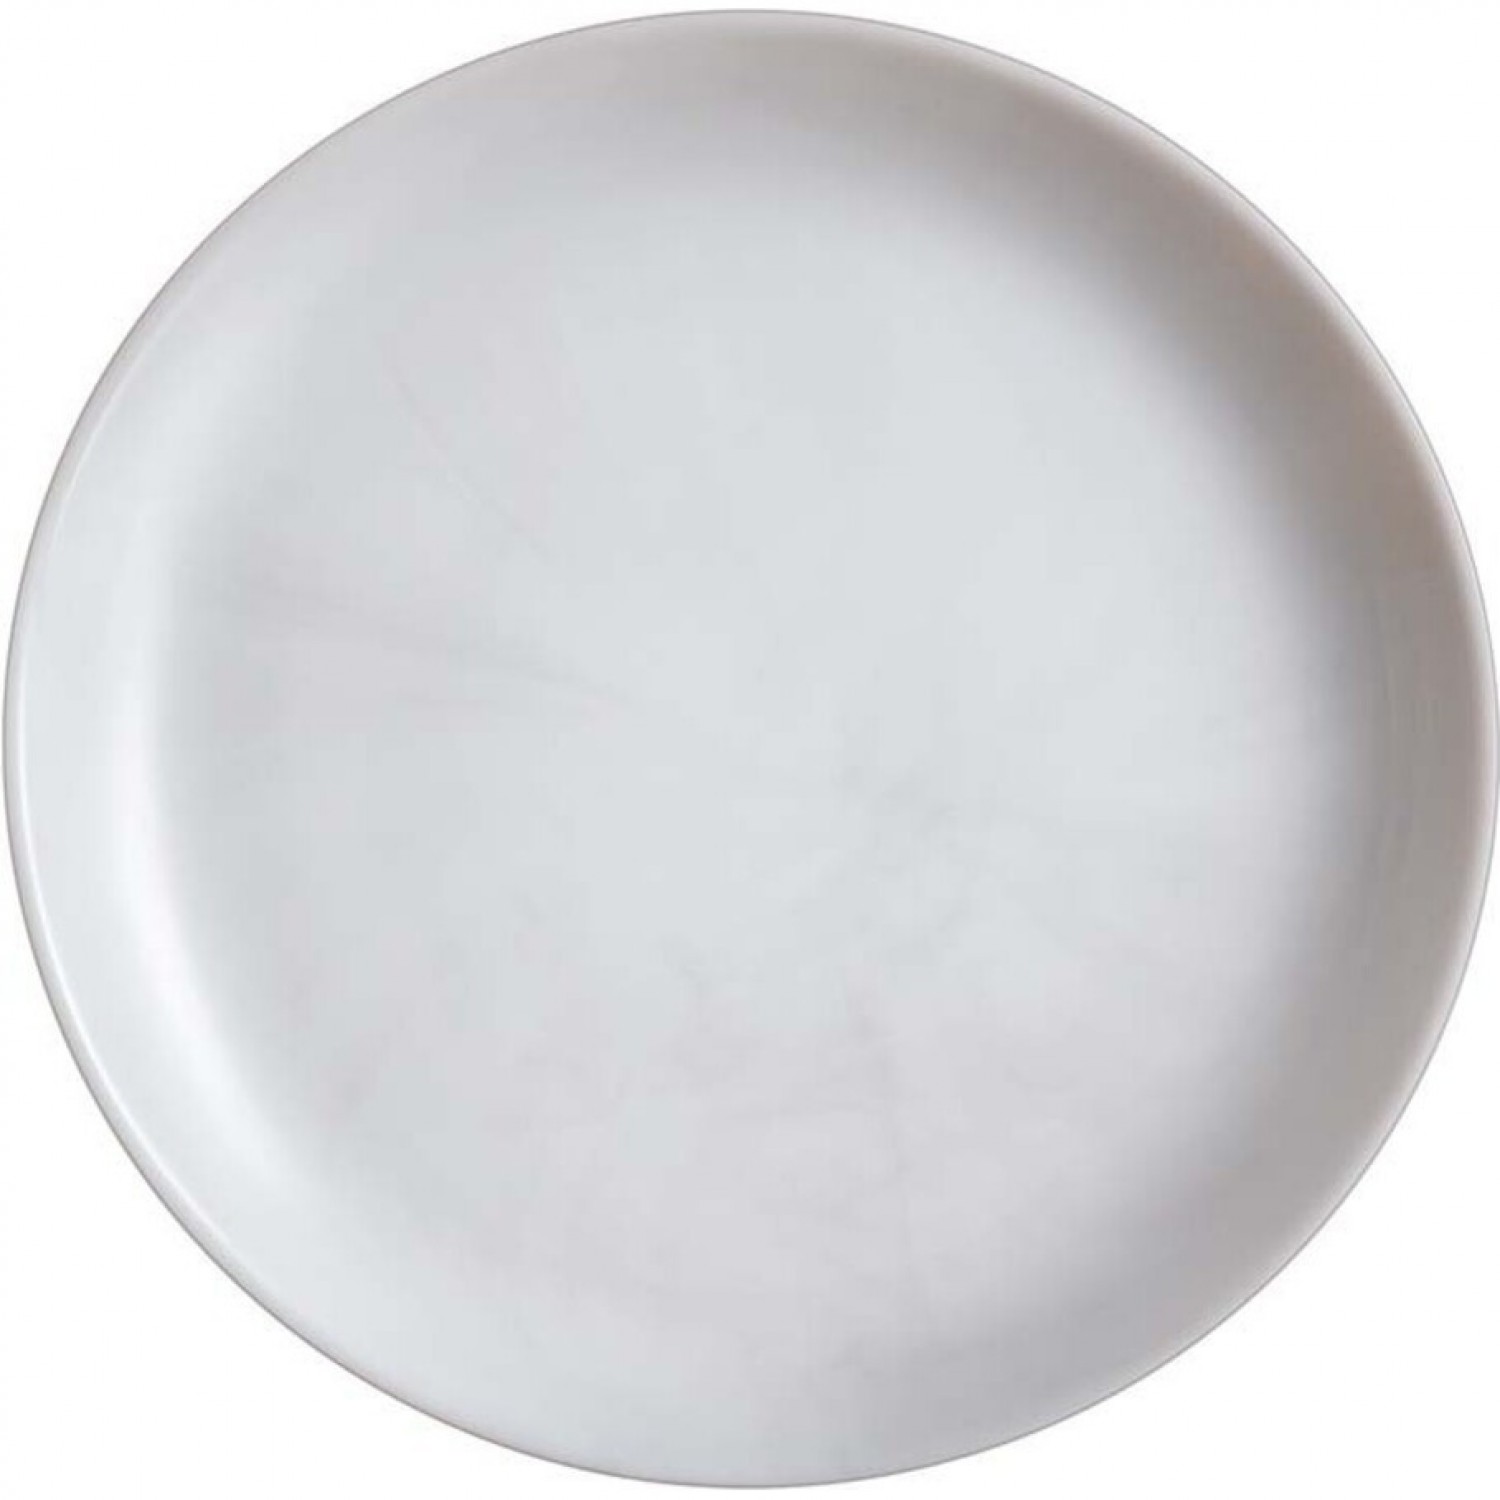 Тарелка обеденная ДИВАЛИ МАРБЛ 25см LUMINARC P9908 тарелка суповая дивали марбл 20см luminarc p9835